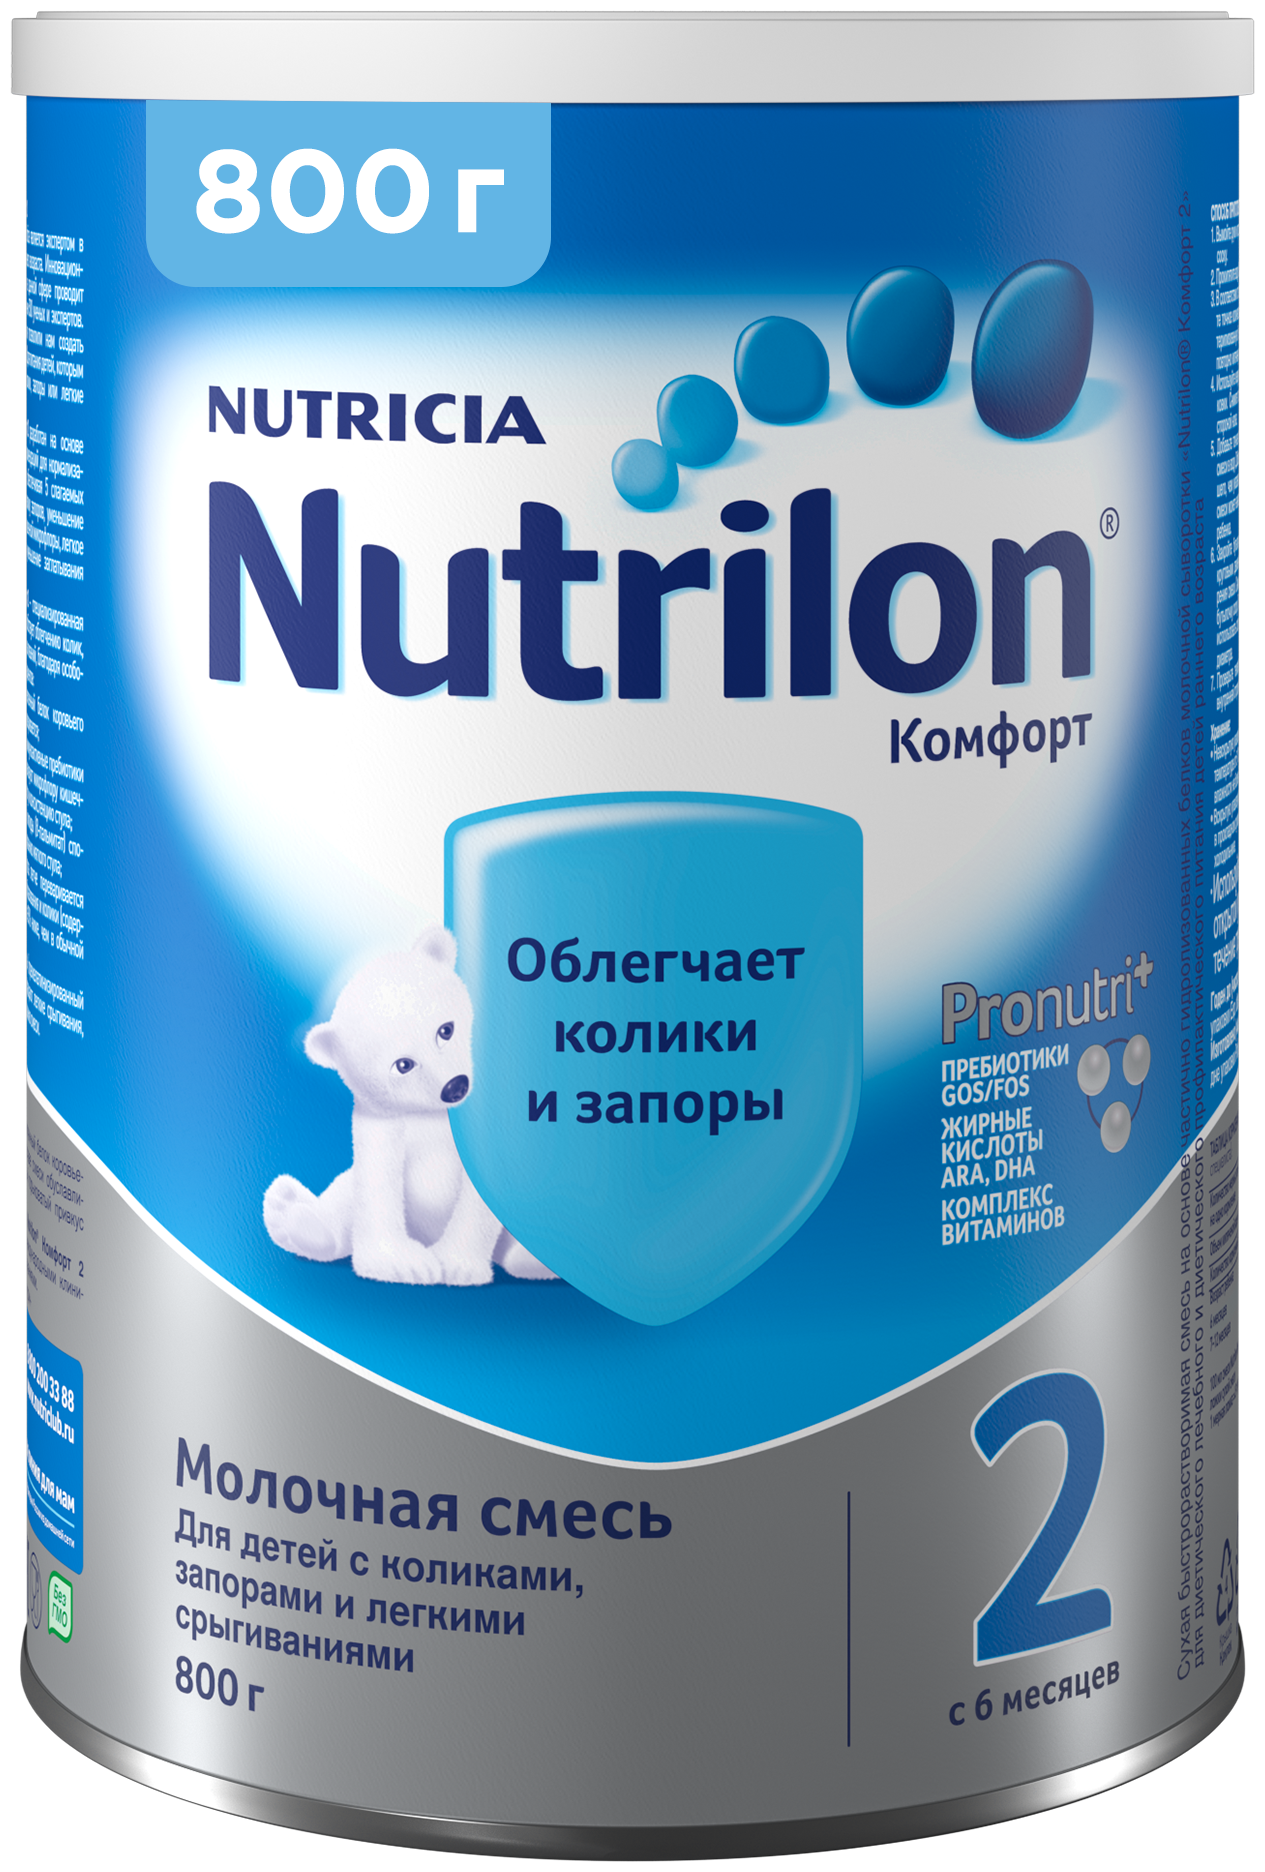 Смесь Nutrilon (Nutricia) 2 Комфорт c 6 месяцев